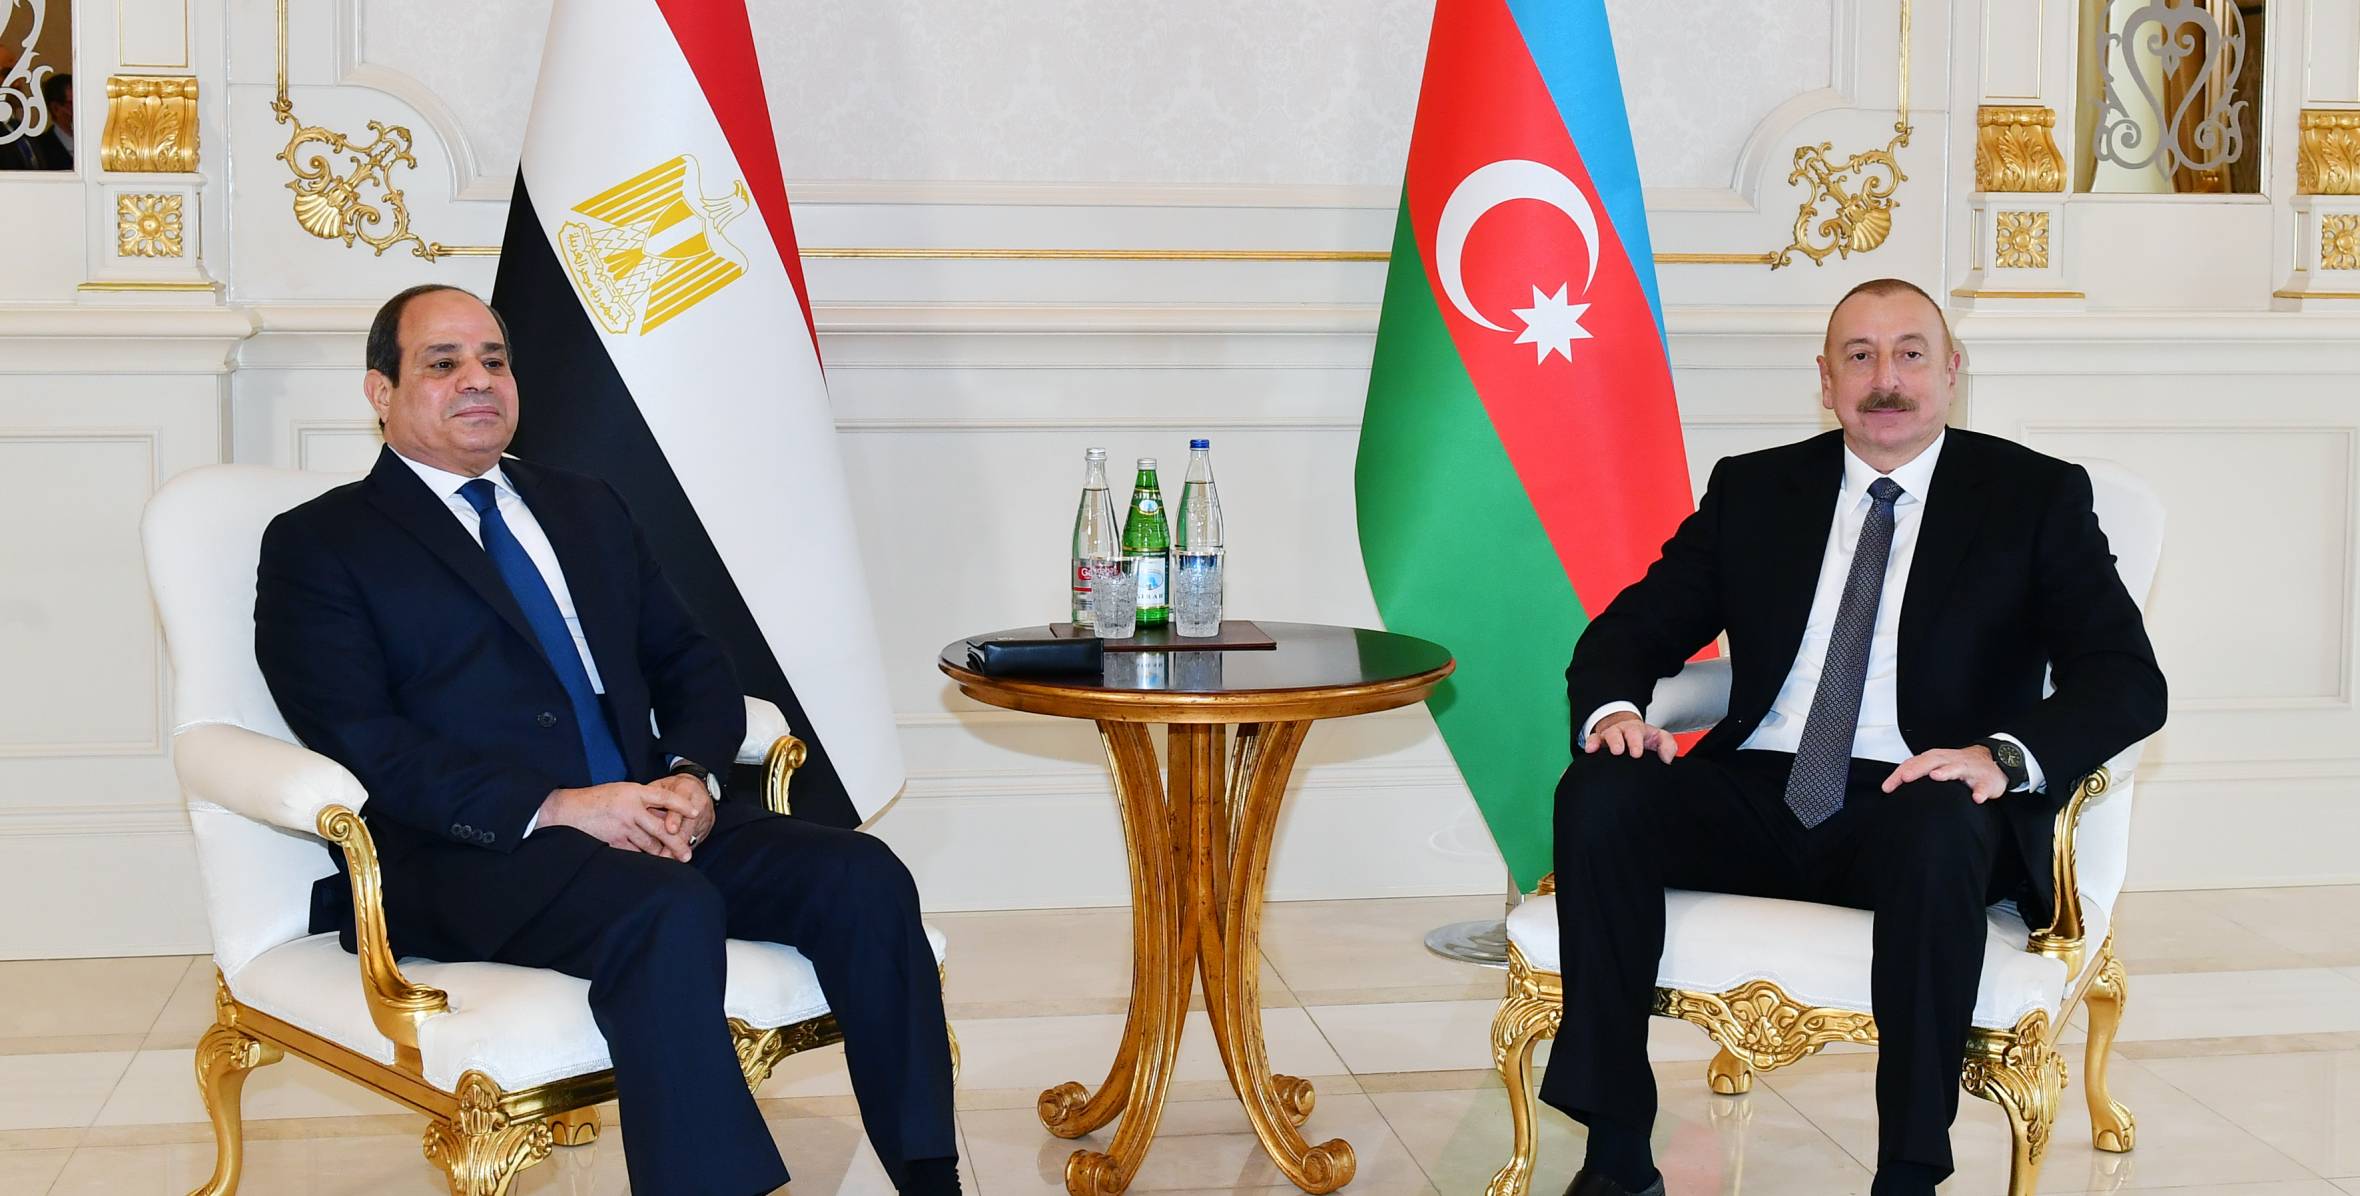 Состоялась встреча президентов Азербайджана и Египта один на один